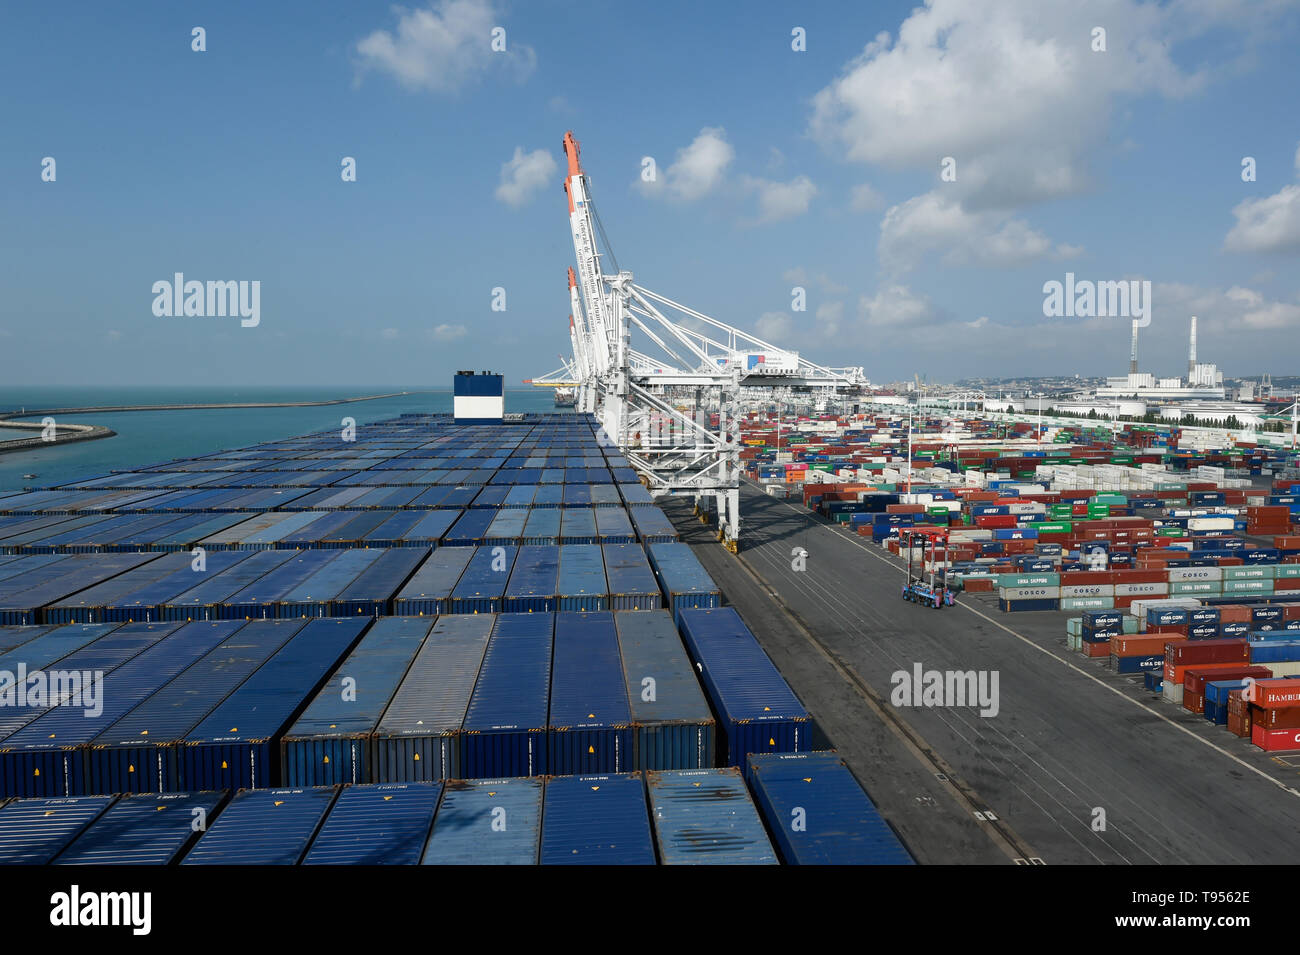 Le Havre (nord-ouest de la France) : porte-conteneurs CMA CGM Antoine de Saint-Exupéry, France's biggest container ship, ici à quai dans la pers Banque D'Images